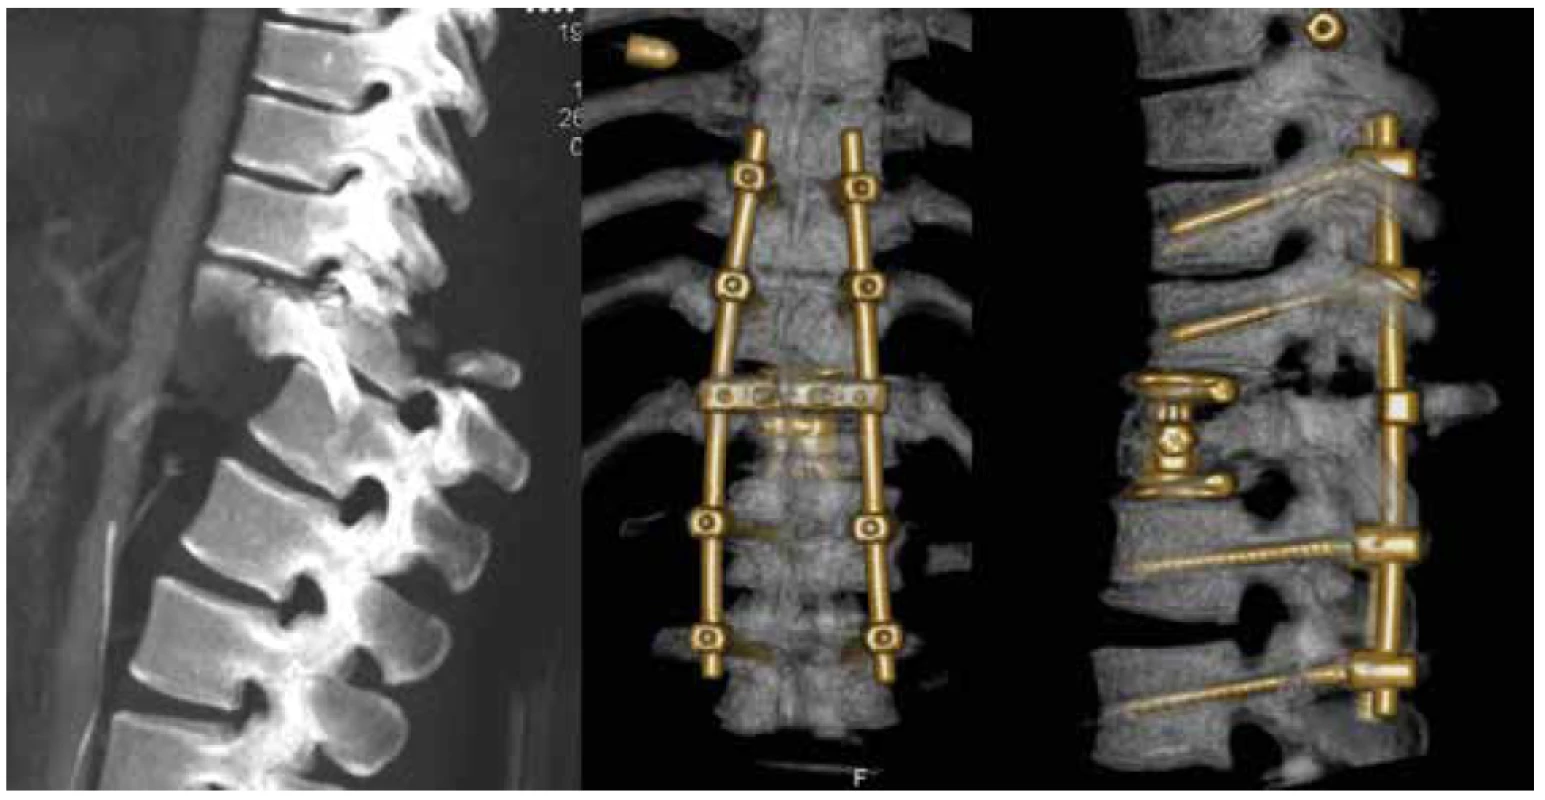 Dislokovaná zlomenina typu C s kompletní míšní lézi (N4) TL AOSIS – 12, řešená kombinovanou
dlouhou instrumentací<br>
Fig. 4. C type fracture with dislocation and complete spinal cord leasion (N4) TL AOSIS – 12, treated by
long combined instrumentation